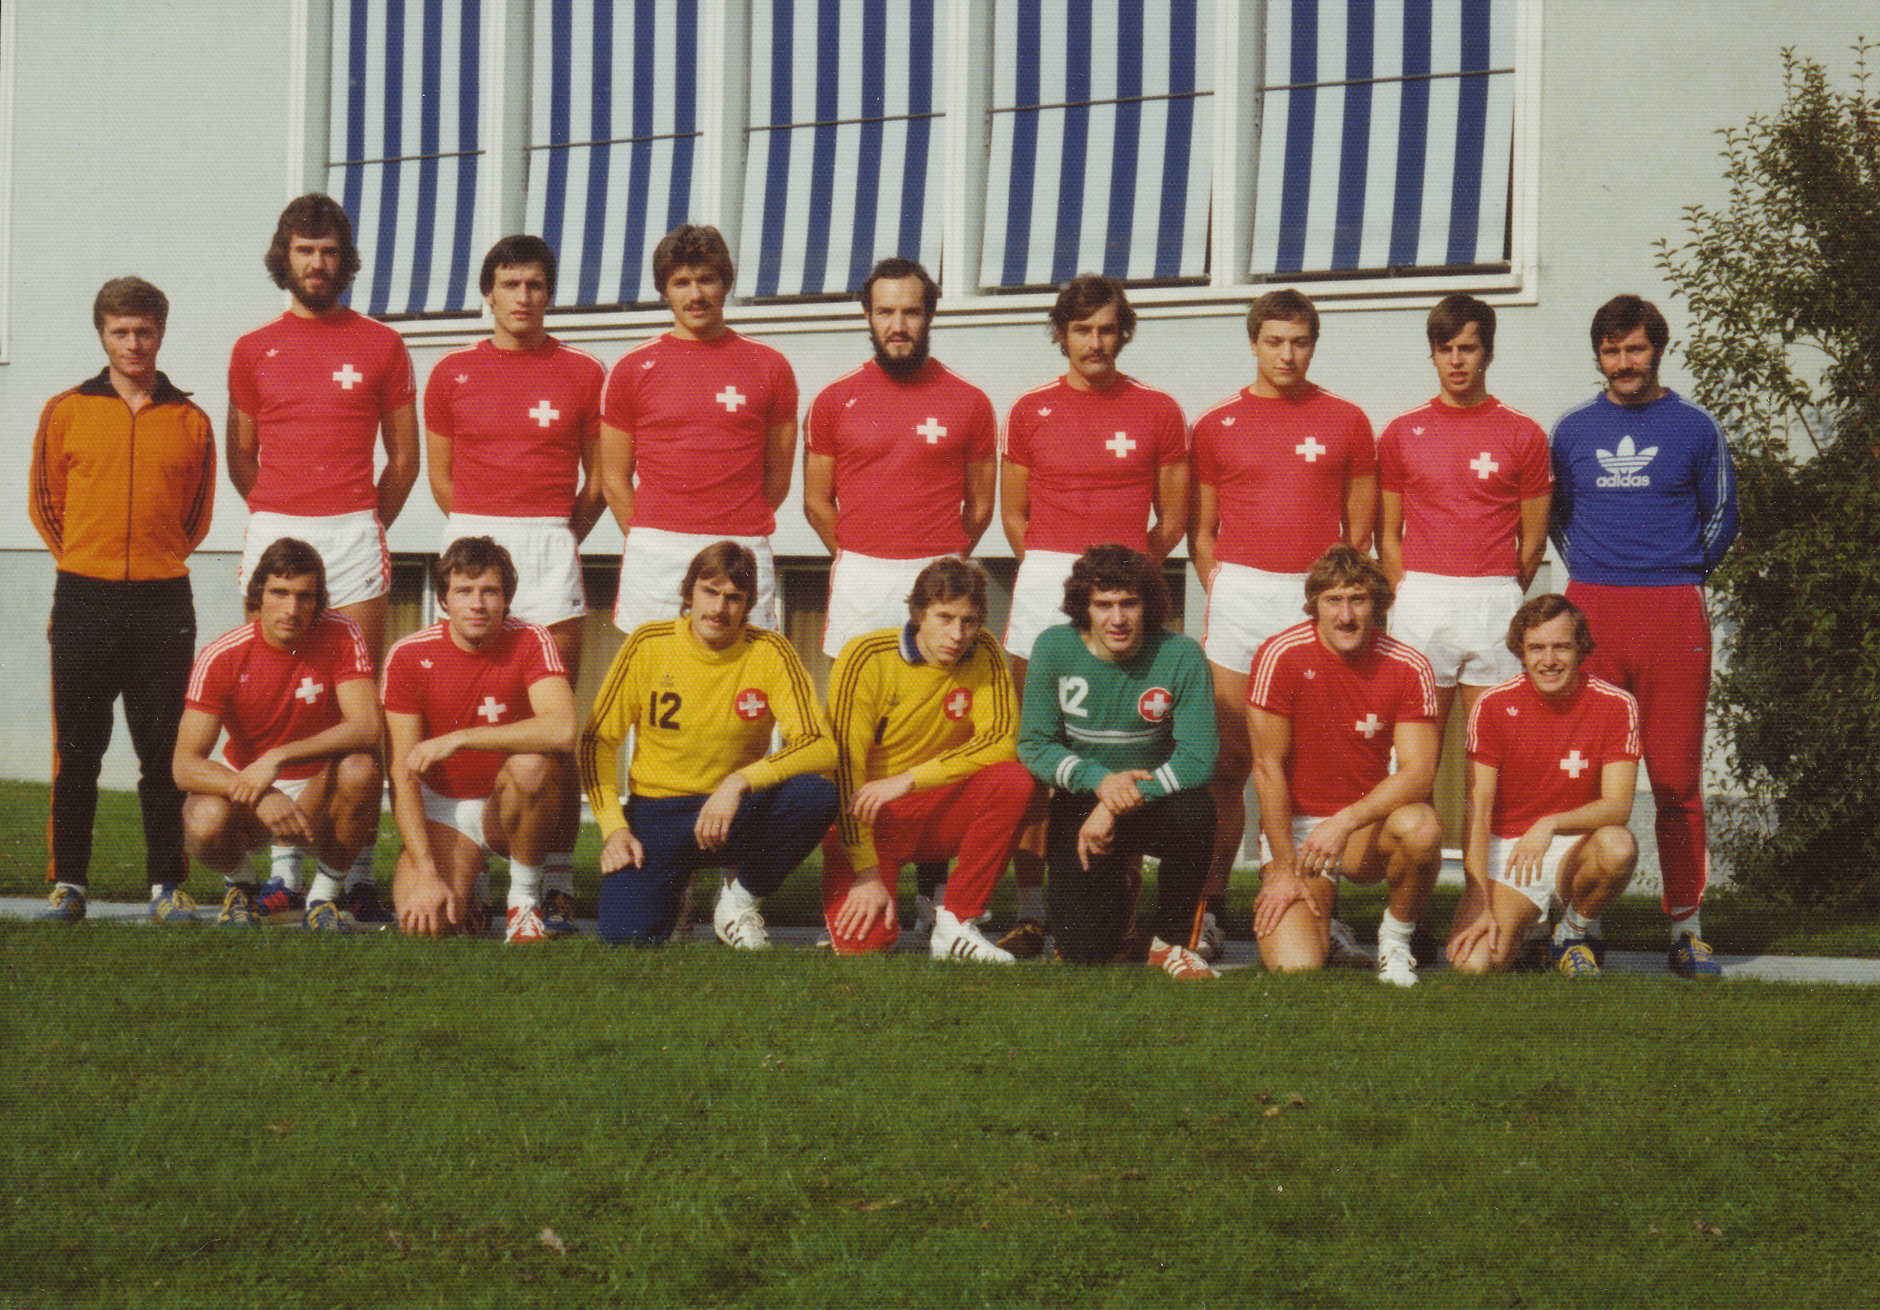 1975-10-09 Teamfoto Männer Nati.jpg